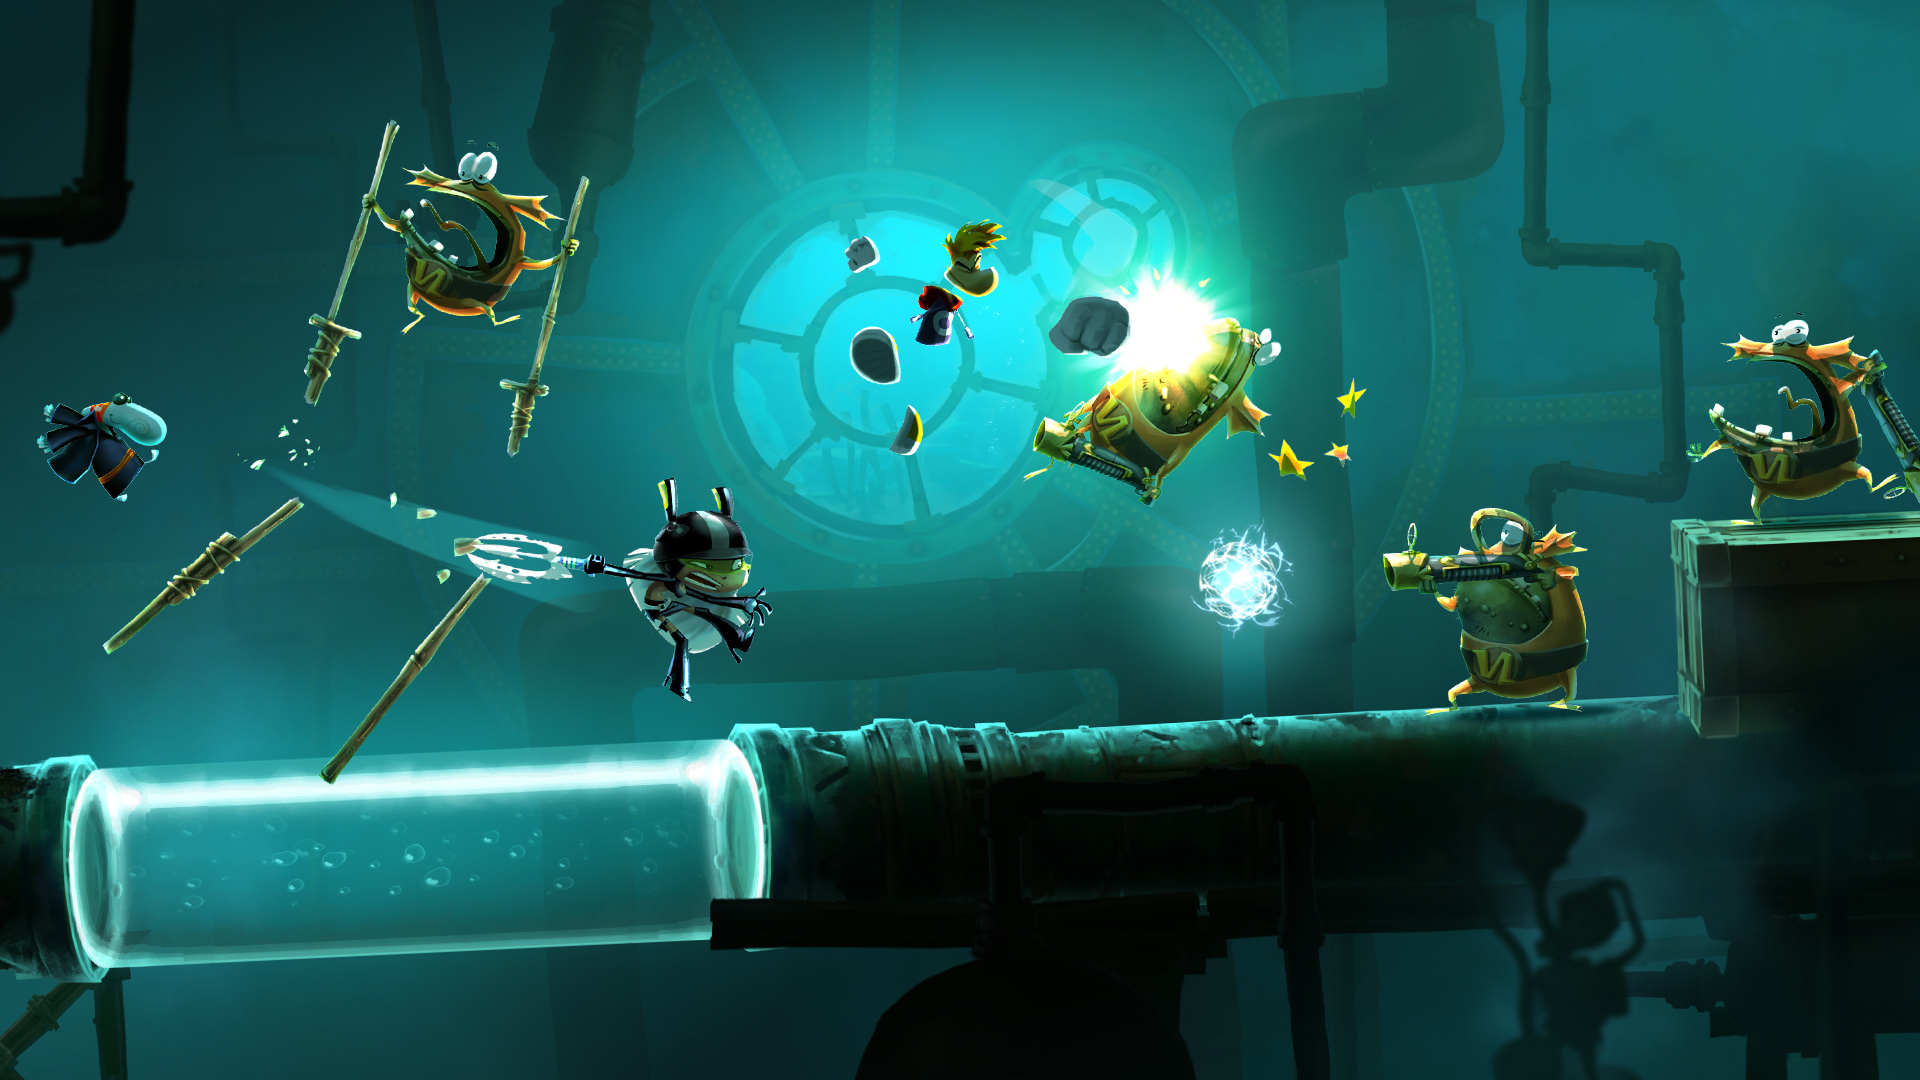 Rayman-Legends-Gets-Underwater-Stealth-Gameplay-Video-Bonus-Costumes-3.jpg